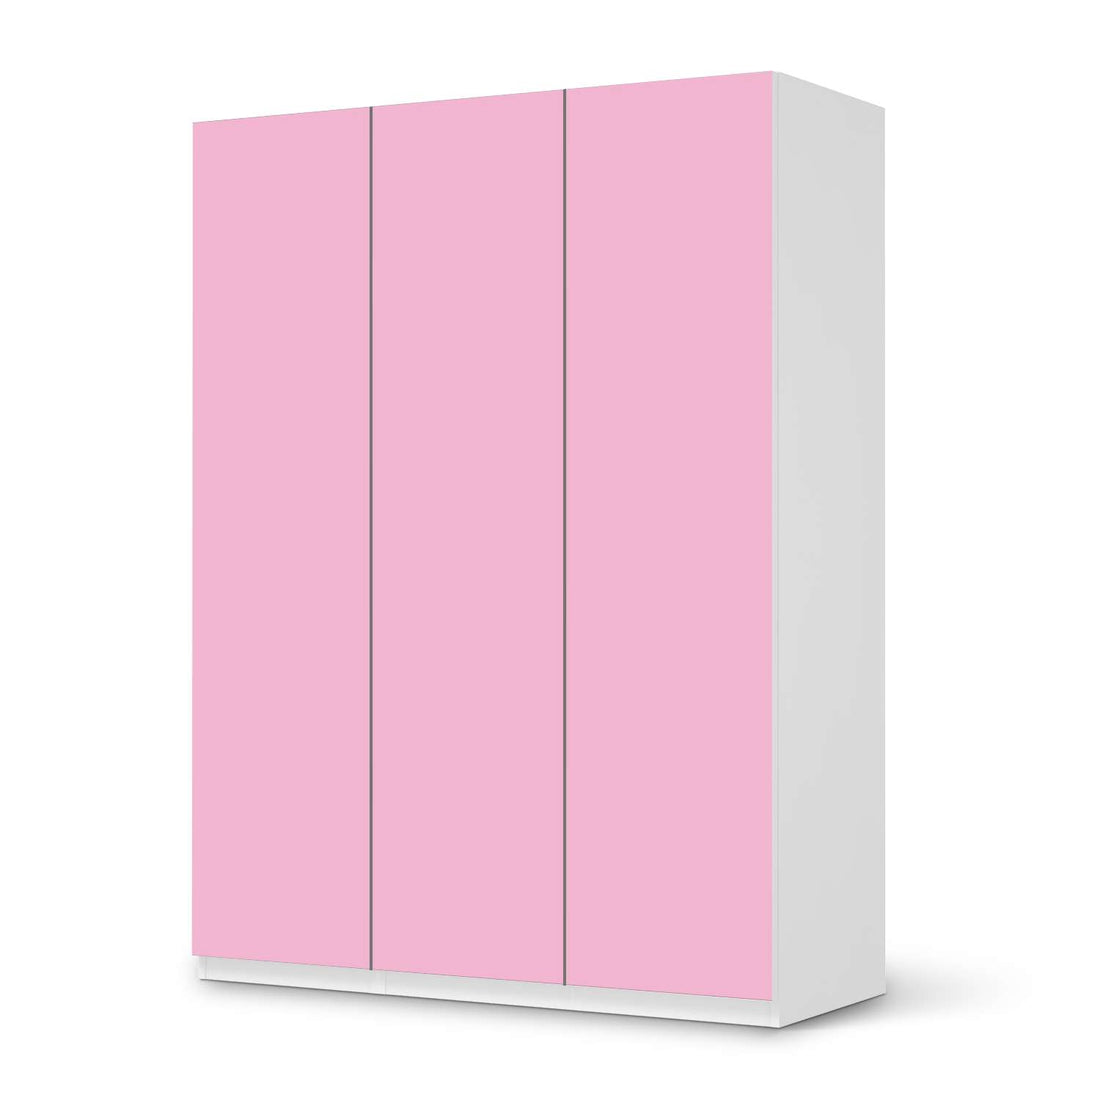 Folie für Möbel Pink Light - IKEA Pax Schrank 201 cm Höhe - 3 Türen - weiss